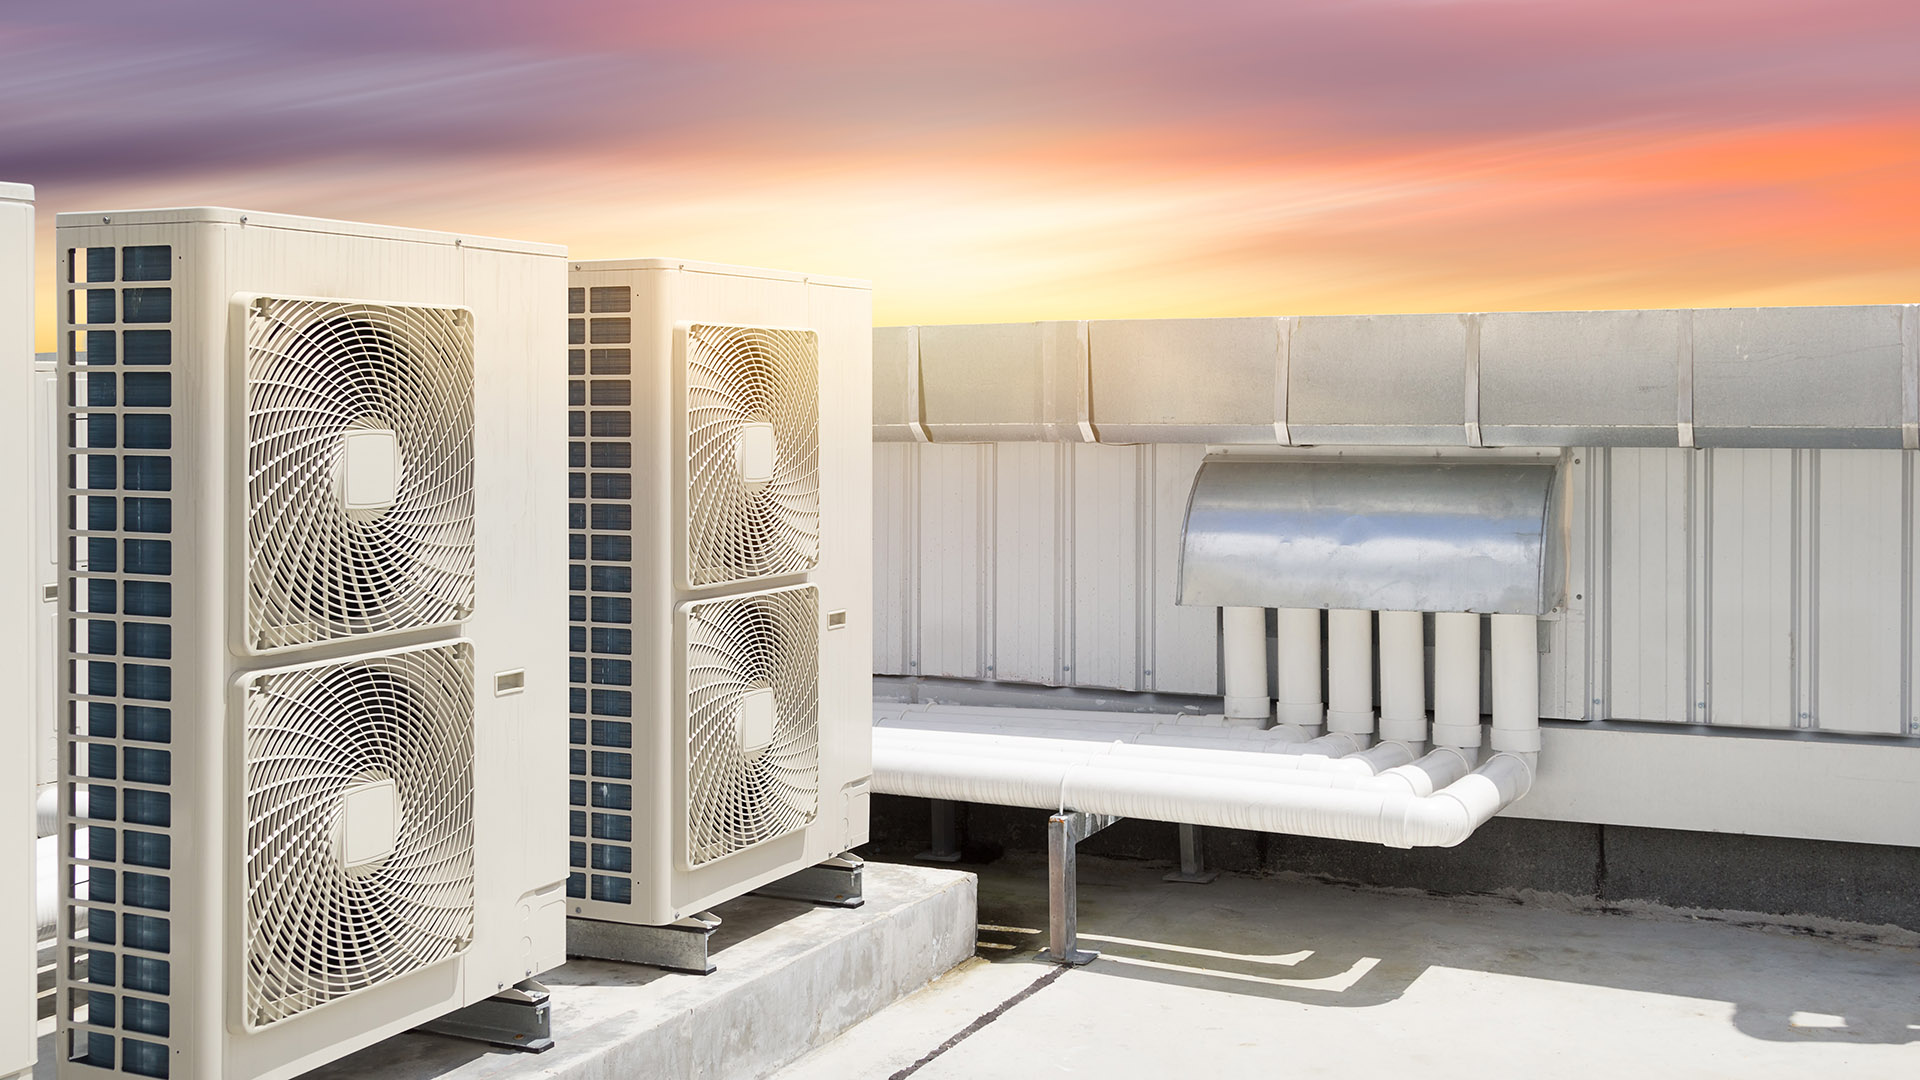 José Luis Jiménez advierte que los sistemas de ventilación deben adaptarse para poder filtrar el aire de los espacios de manera constante. Si esto no es posible es recomendable evitar estos espacios (Shutterstock)